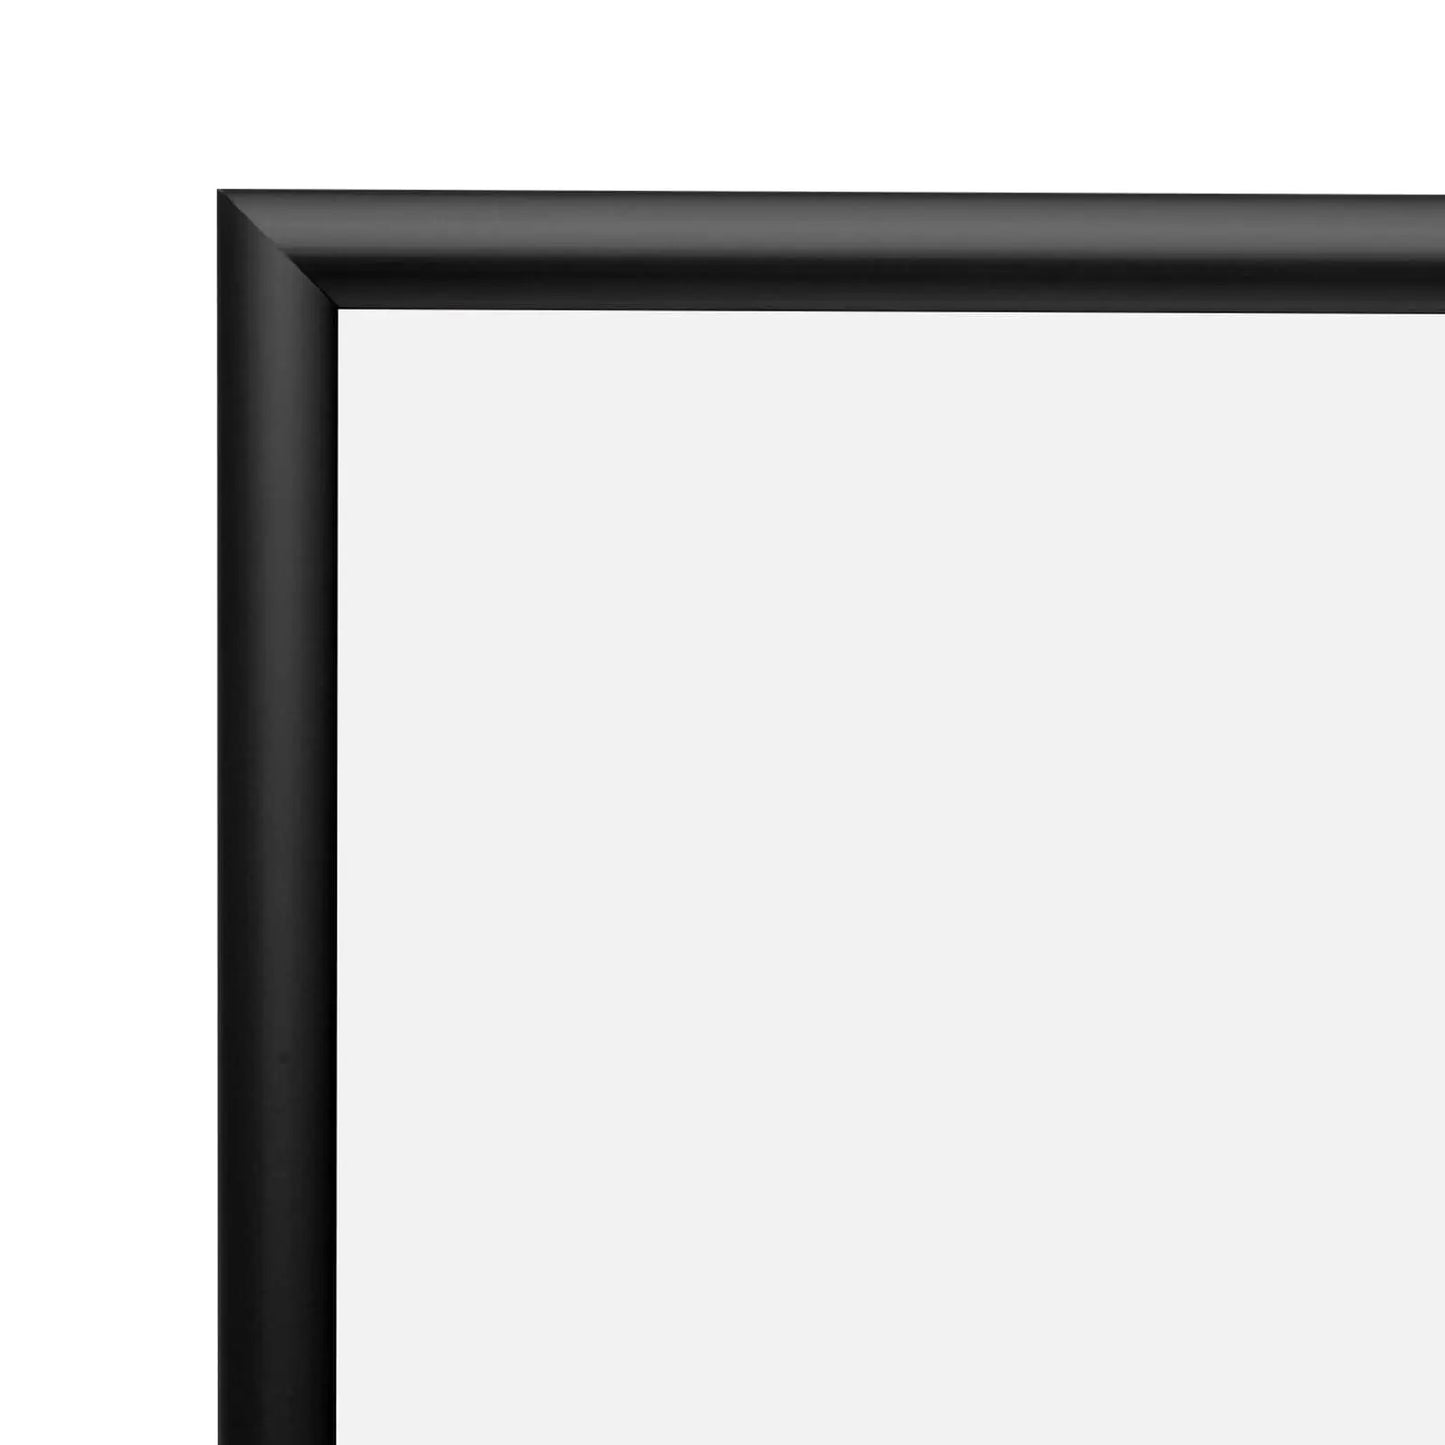 24x30 Black Snap Frame - 1" Profile - Snap Frames Direct